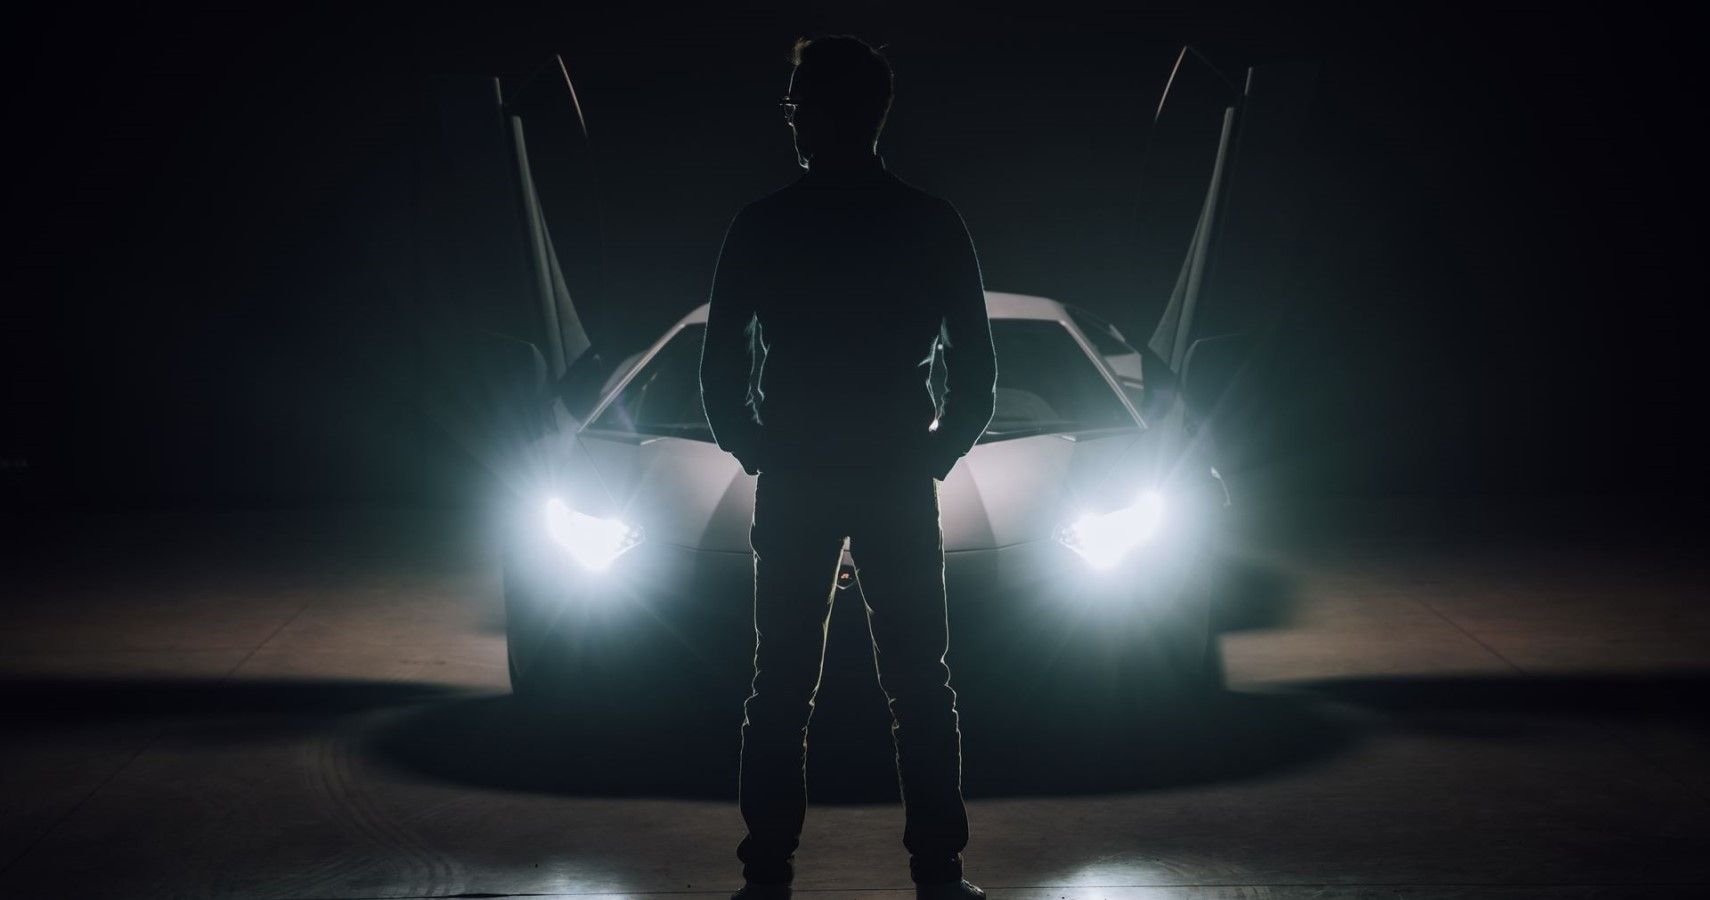 The Lamborghini NFT creator image